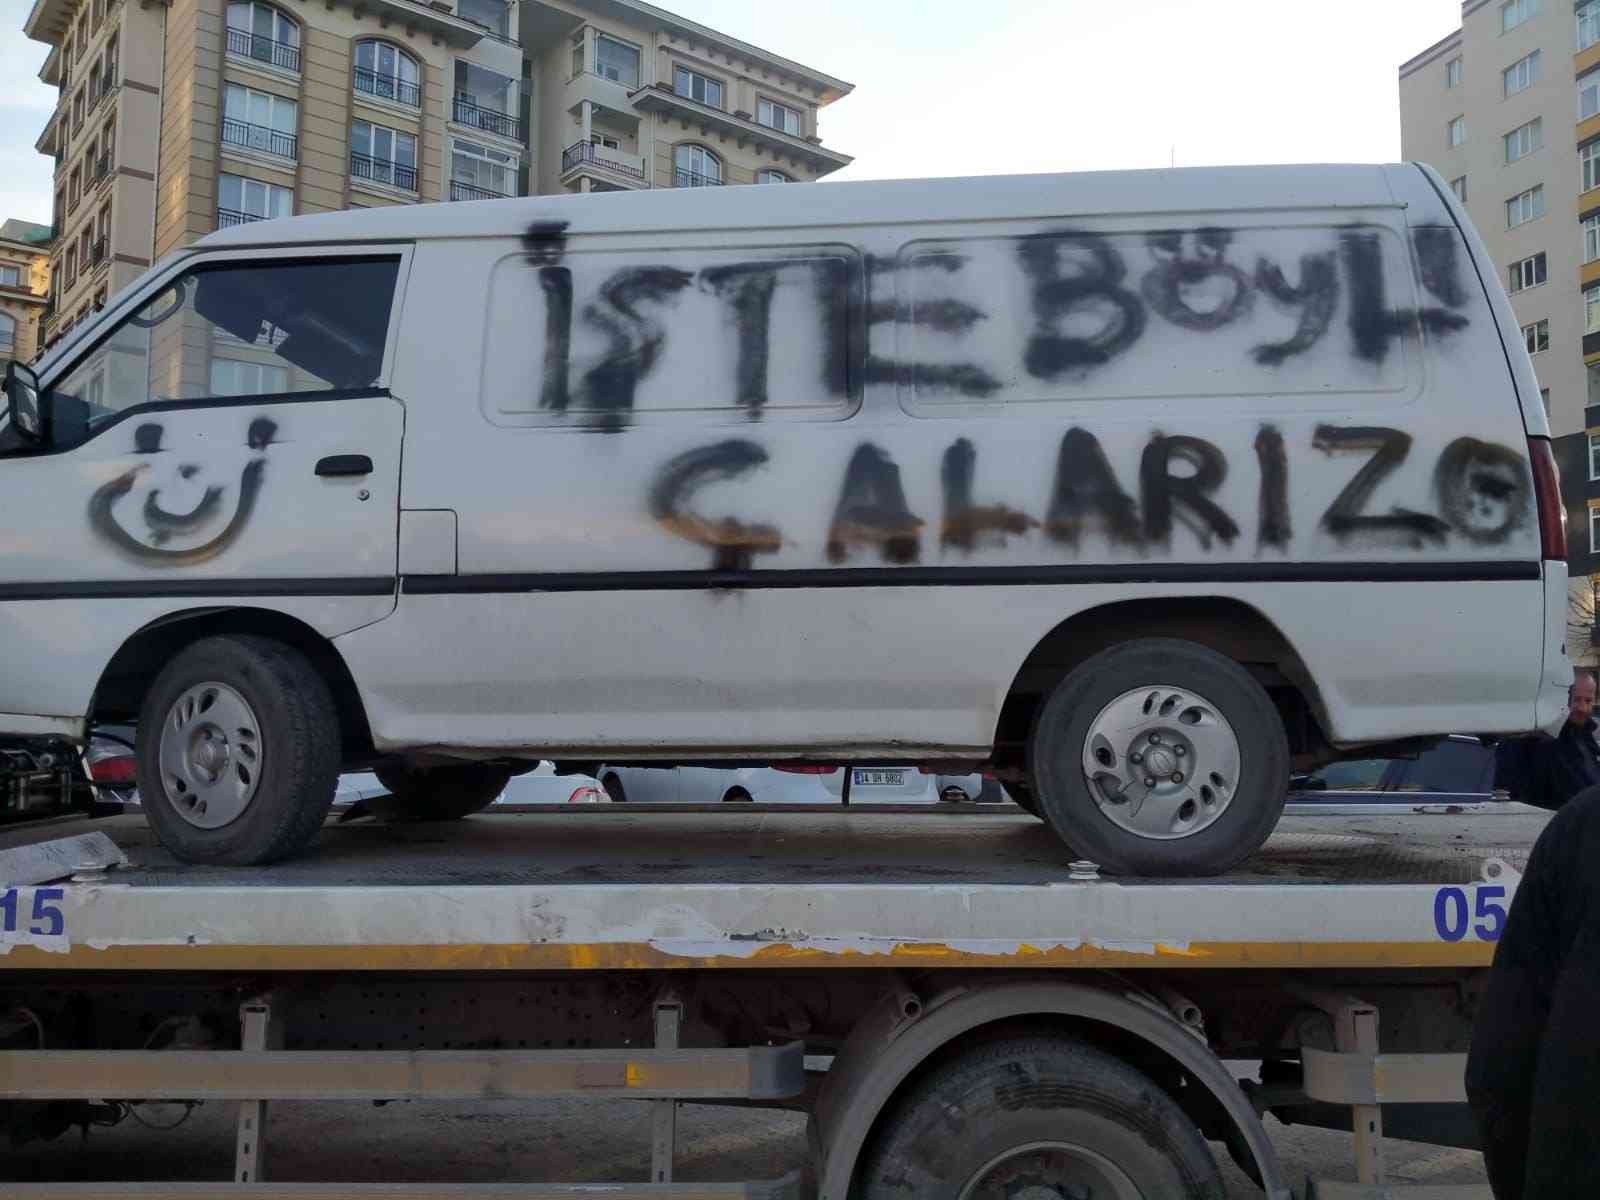 “İşte böyle çalarız” diyen ukala hırsızlara polisten cevap: İşte böyle yakalarız #istanbul